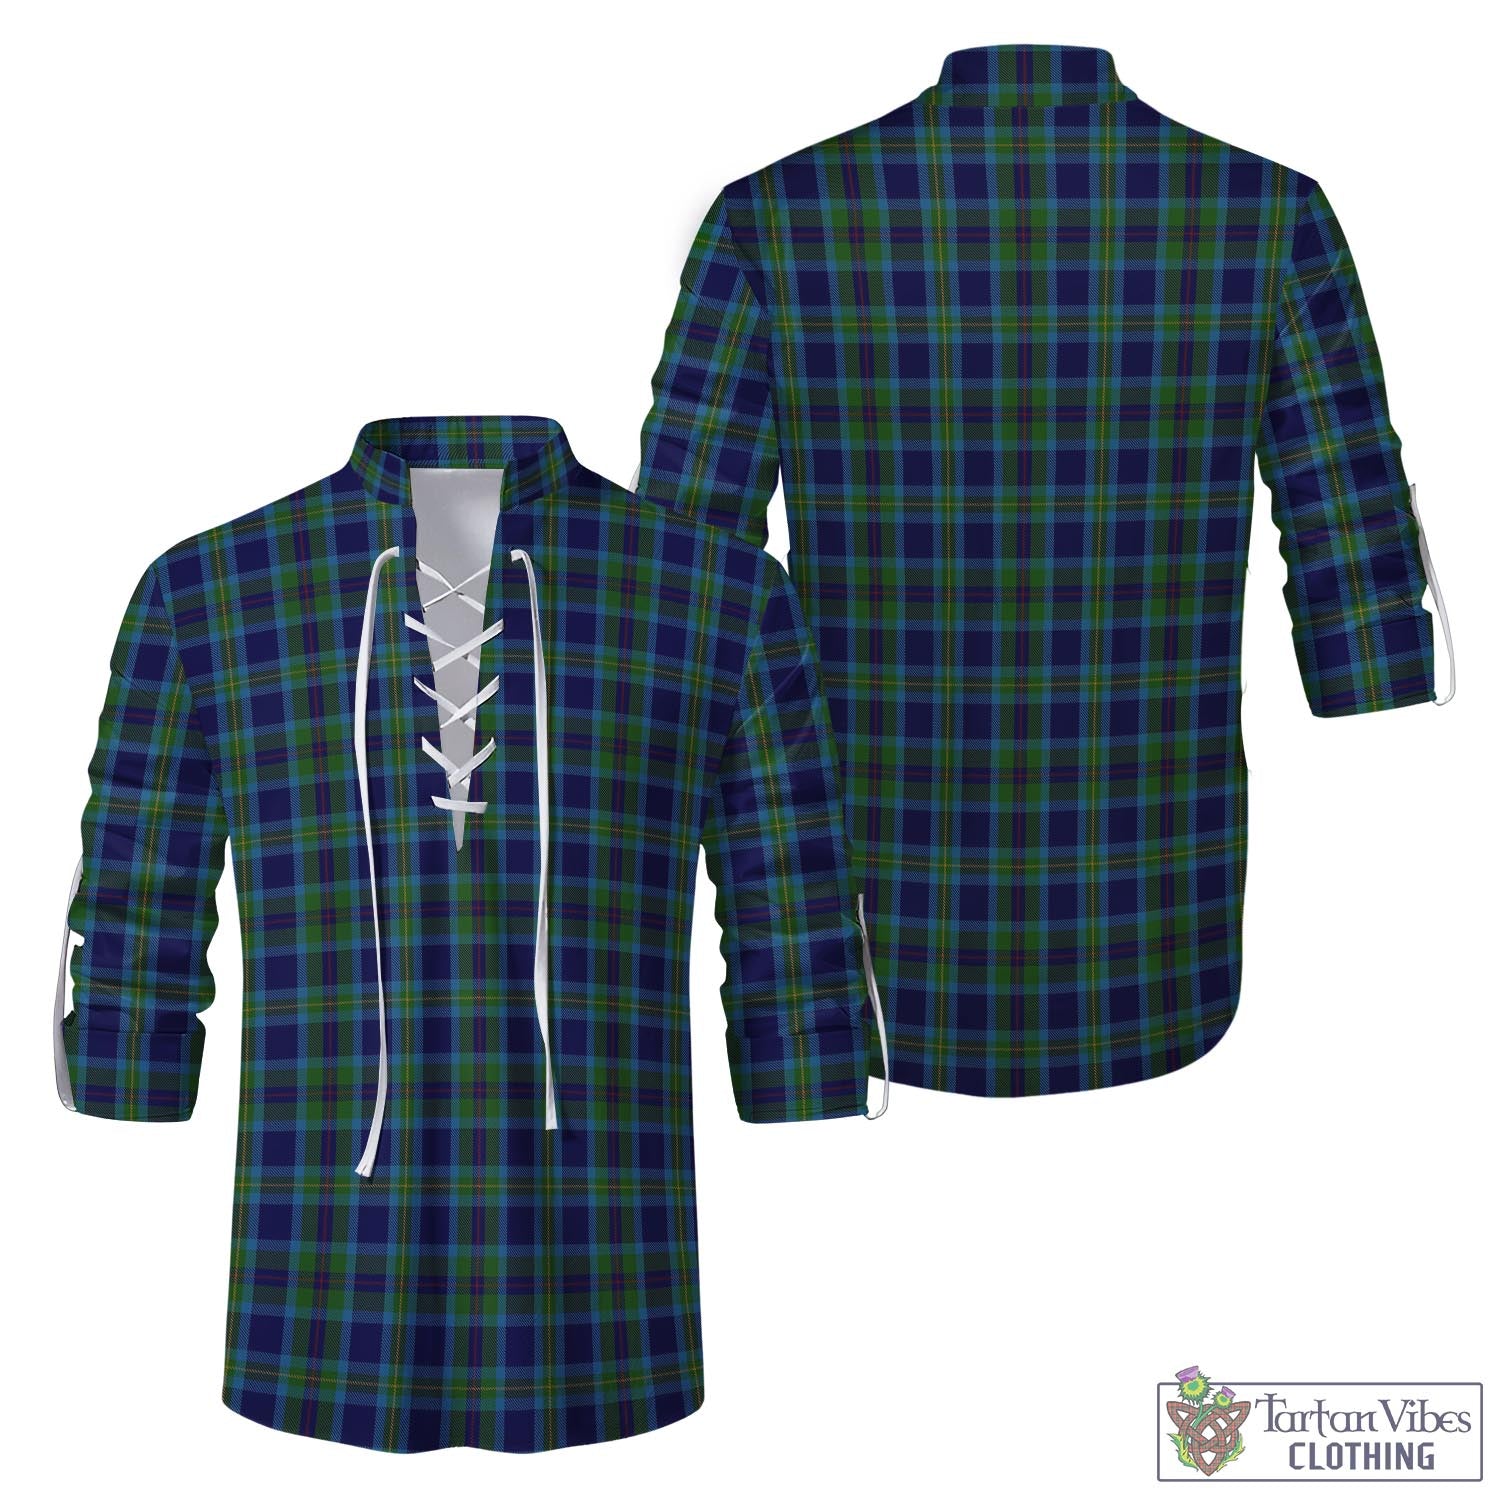 Tartan Vibes Clothing Miller Tartan Men's Scottish Traditional Jacobite Ghillie Kilt Shirt